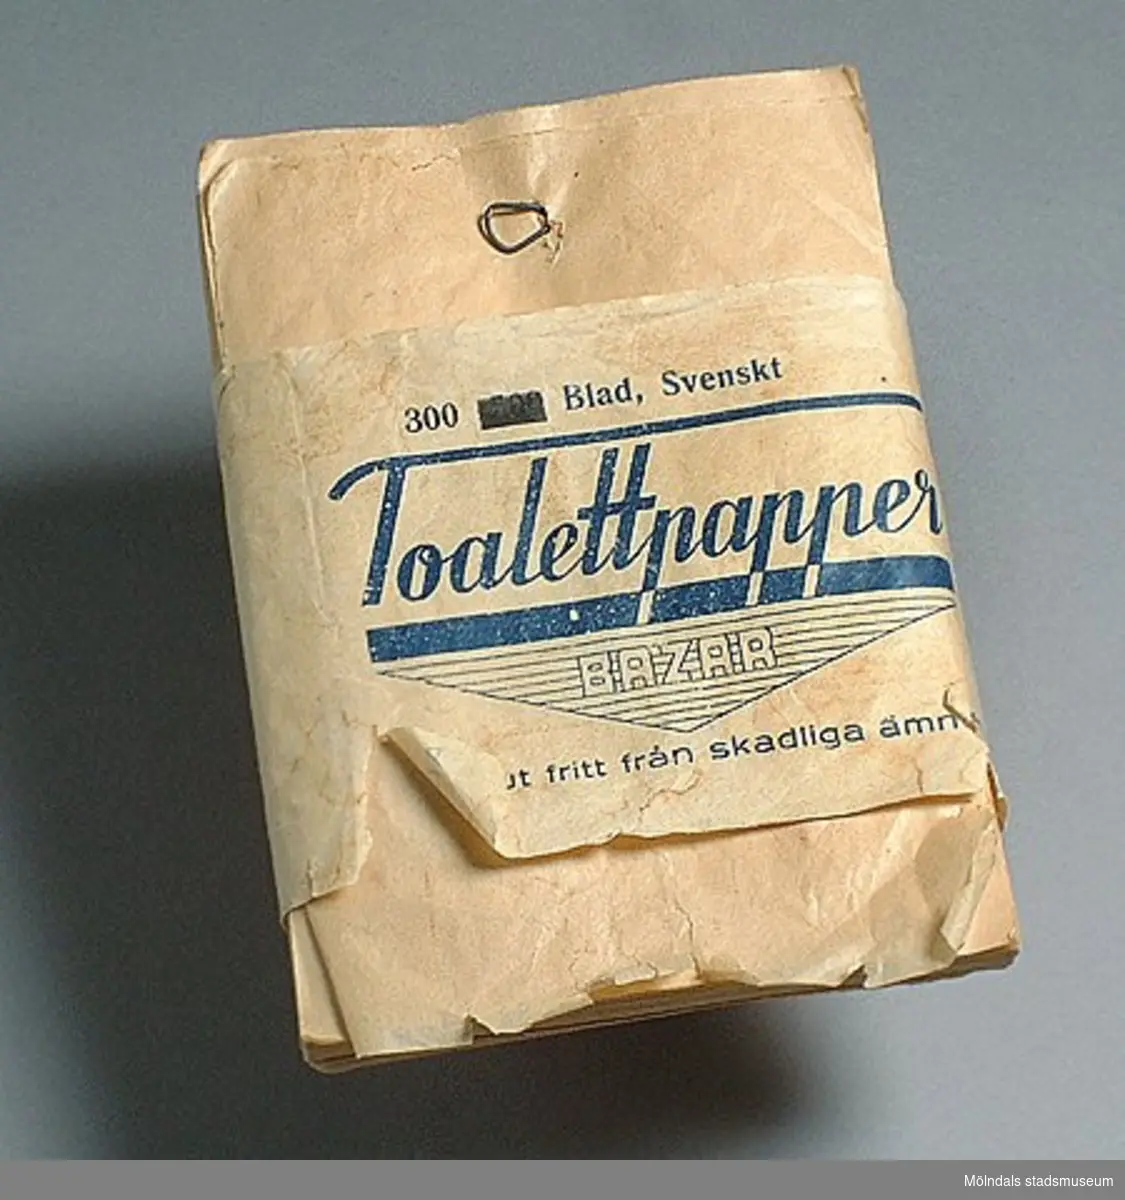 Toalettpapper av märket Bazar, 300 blad, från tiden för 2:a världskriget. "Absolut fritt från skadliga ämnen".Det tunna pappret hängdes på en liten krok av ståltråd. Toalettpapper var lyx.